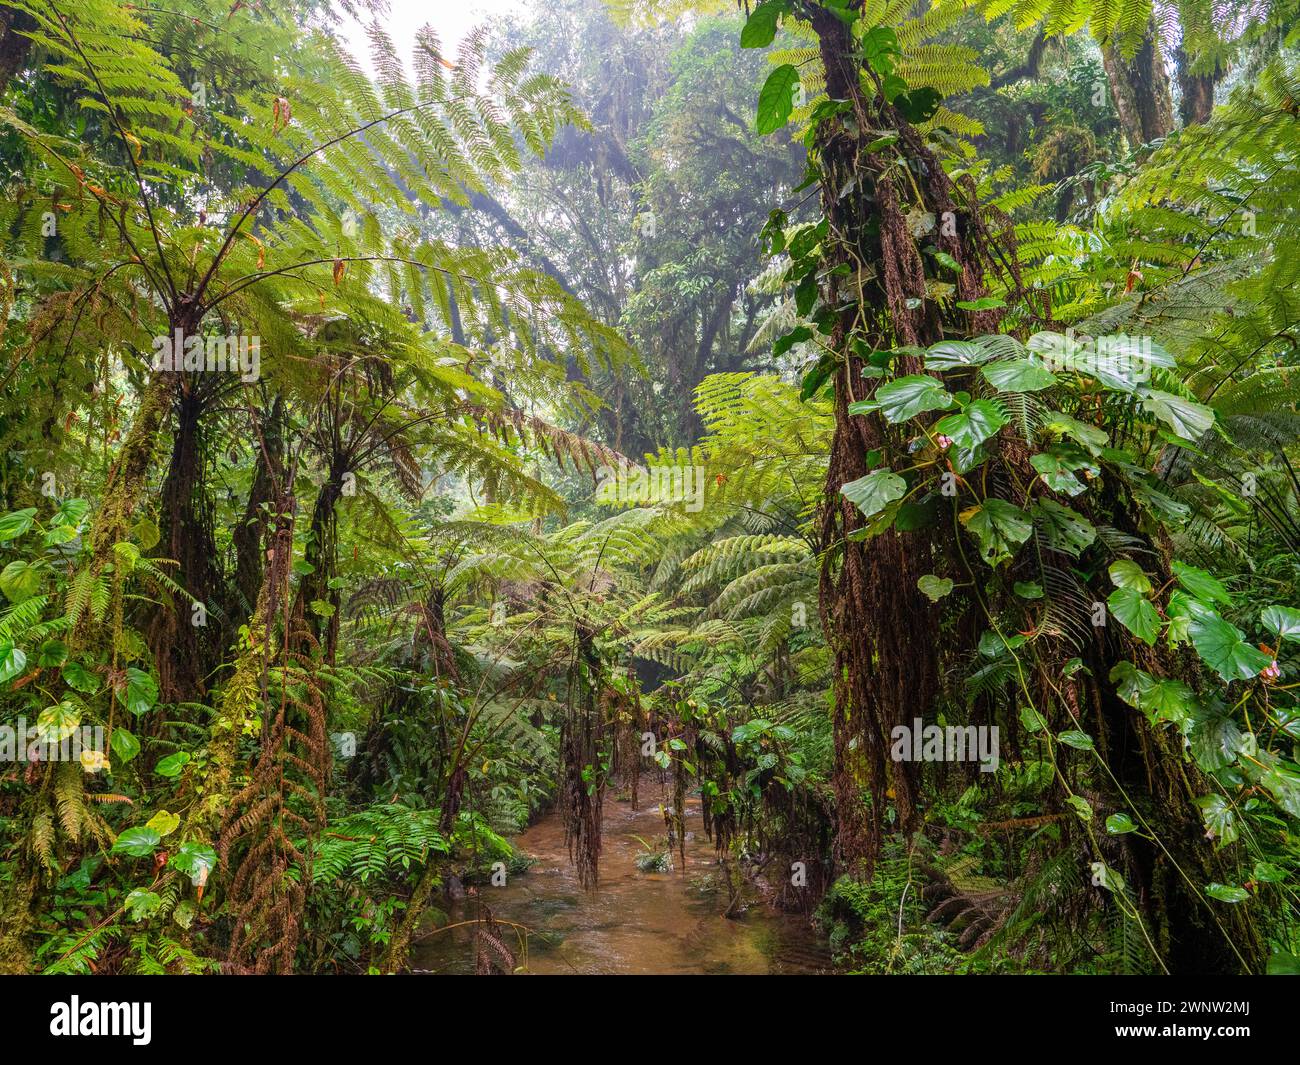 Rainforest in Bwindi Impenetrable National Park, Uganda. Stock Photo